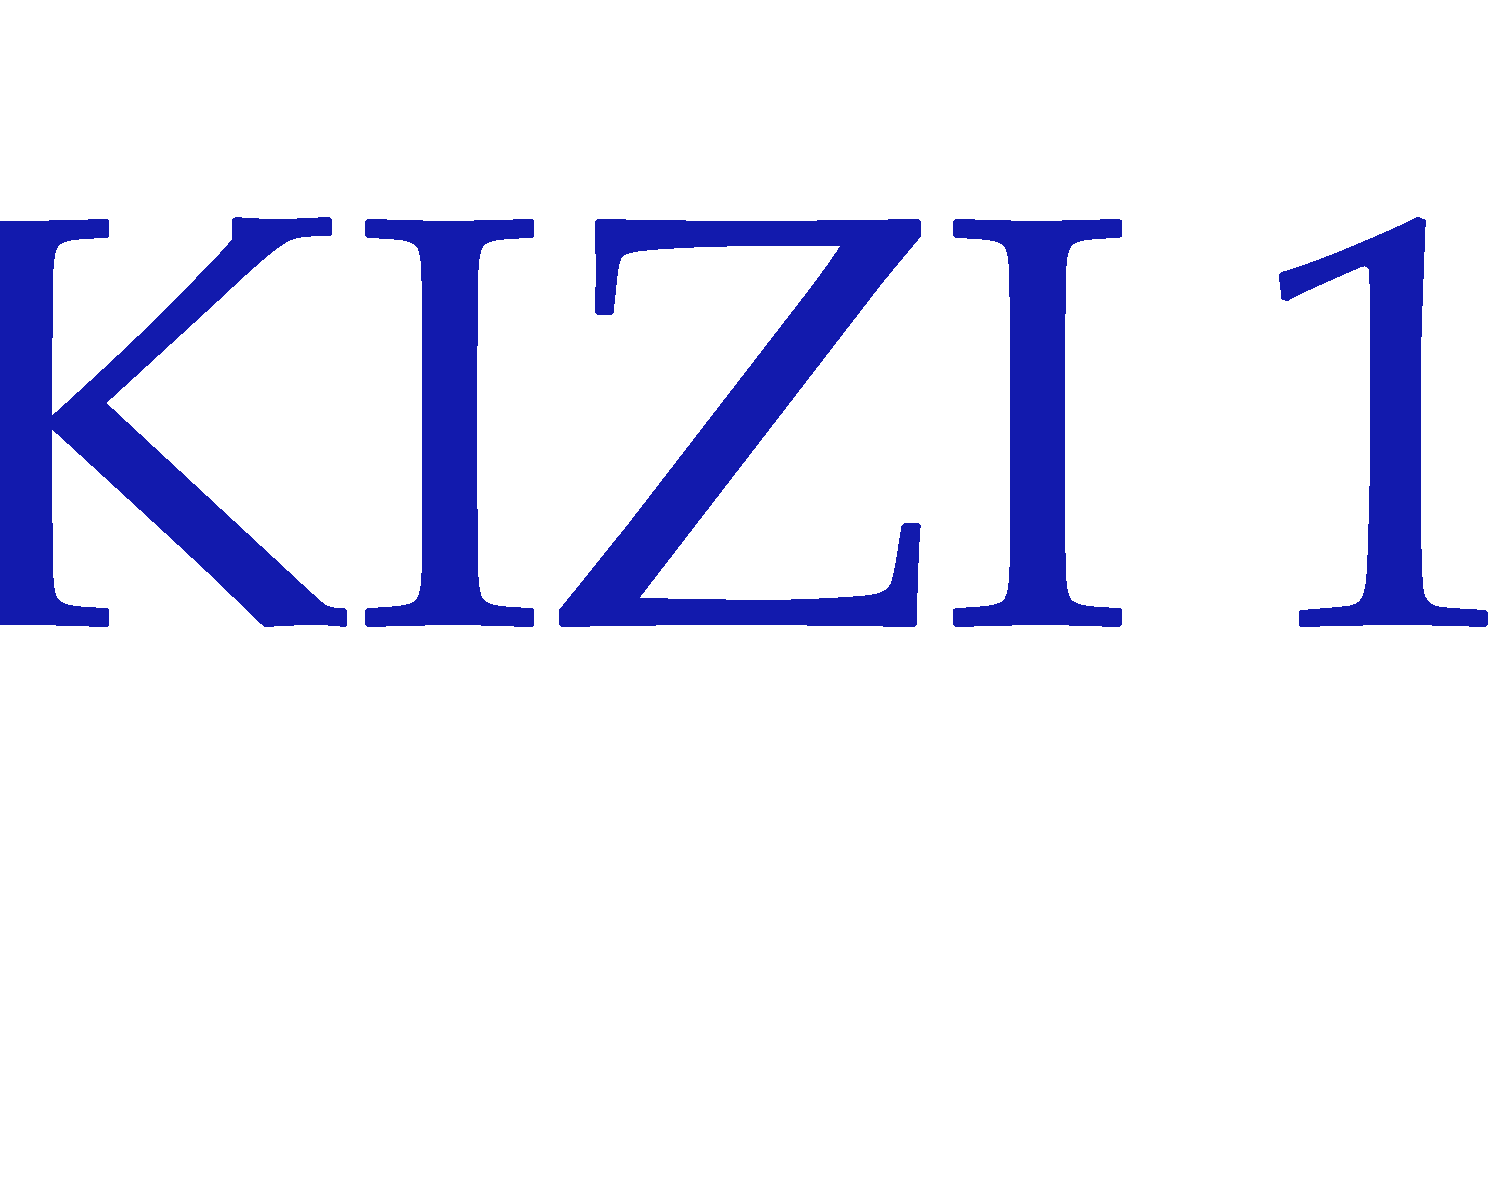 Kizi 1